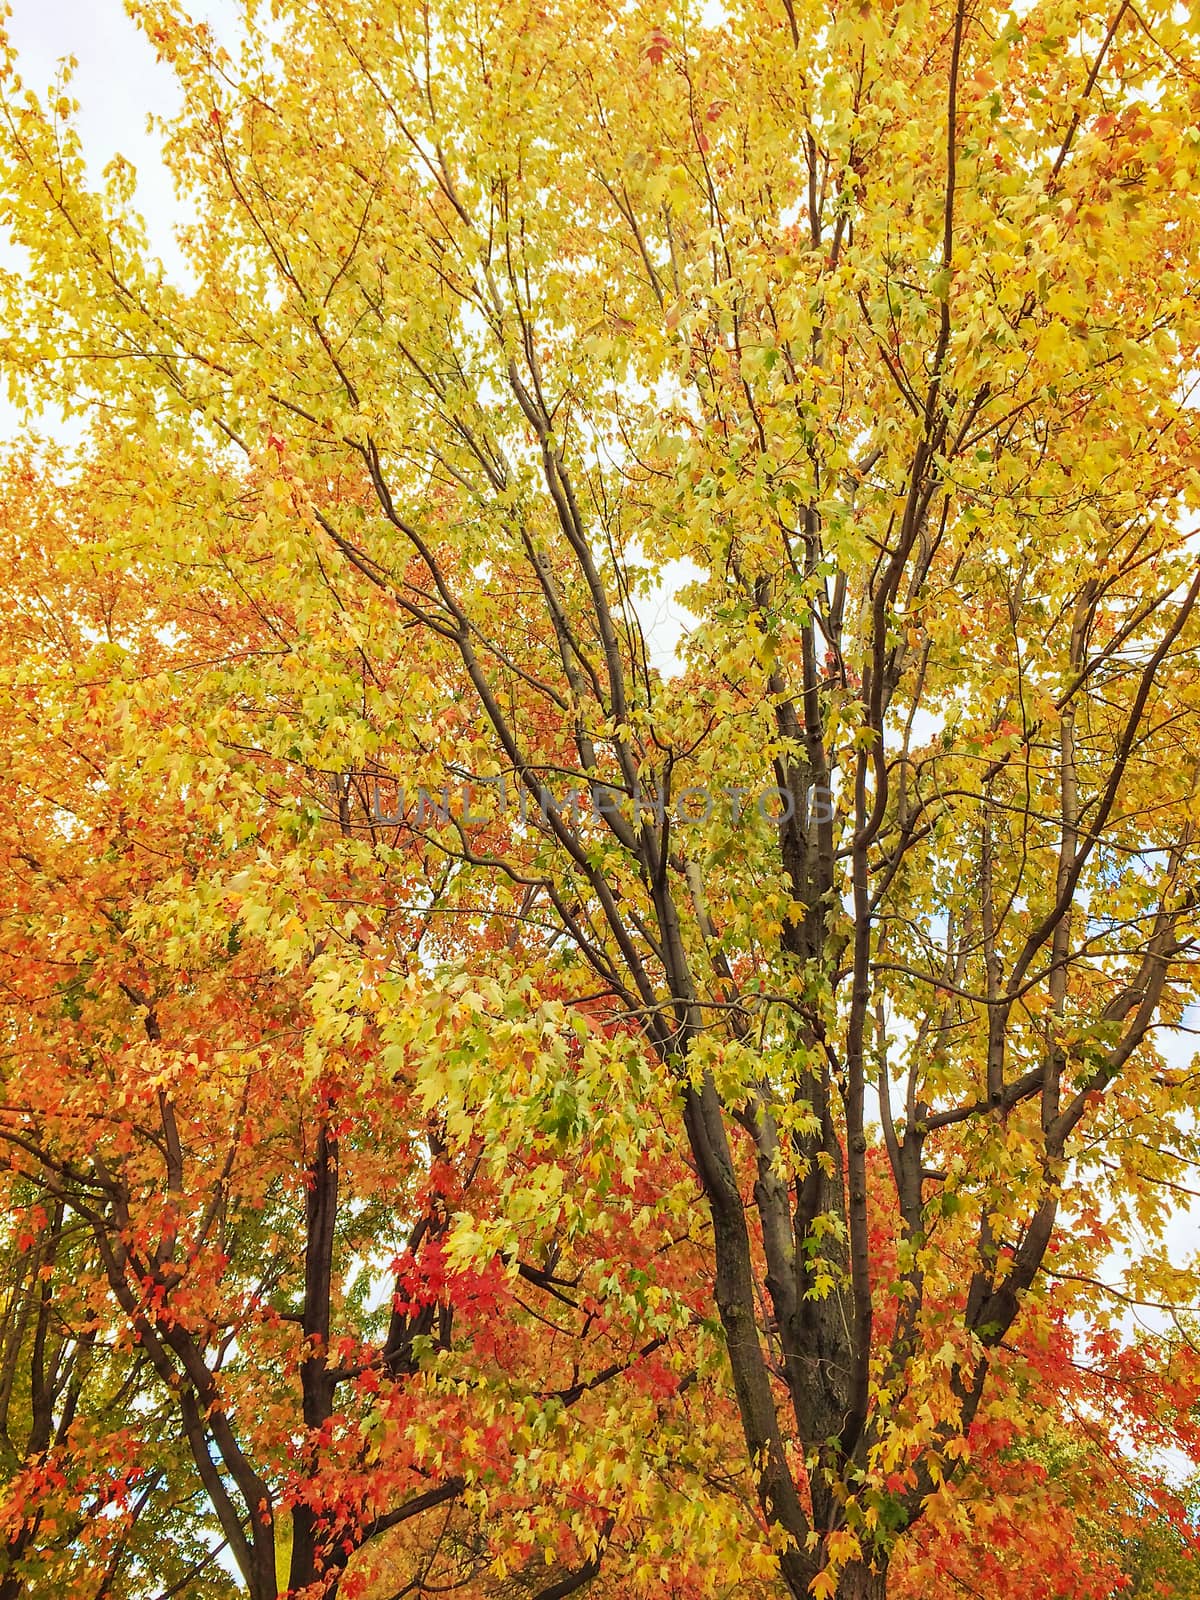 Golden autumn trees. Quebec, Canada.